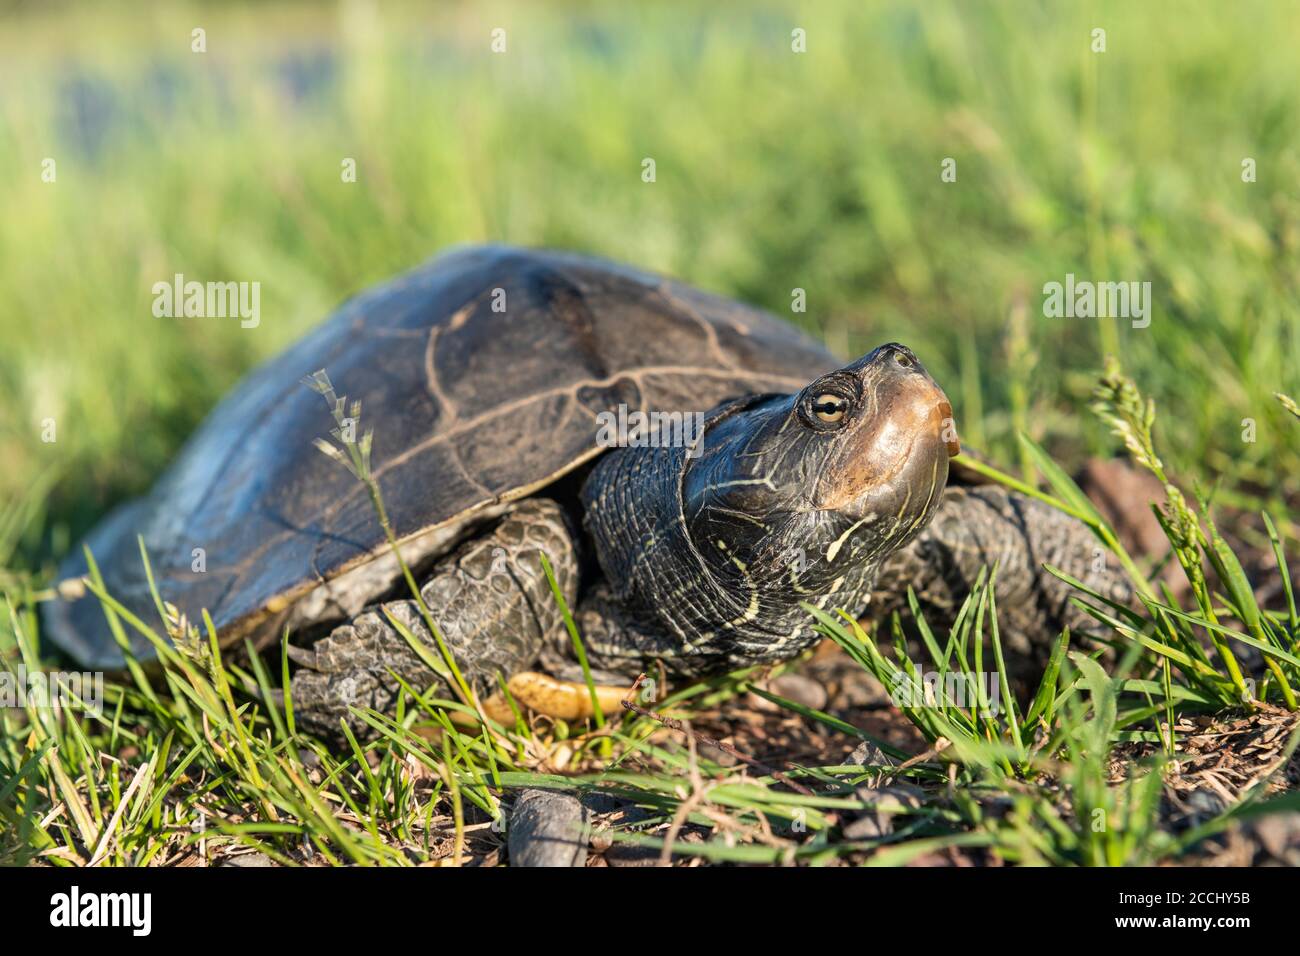 Karteschildkröte (Graptemys geographica), Region des Mittleren Westens und der Großen Seen, USA, von Dominique Braud/Dembinsky Photo Assoc Stockfoto